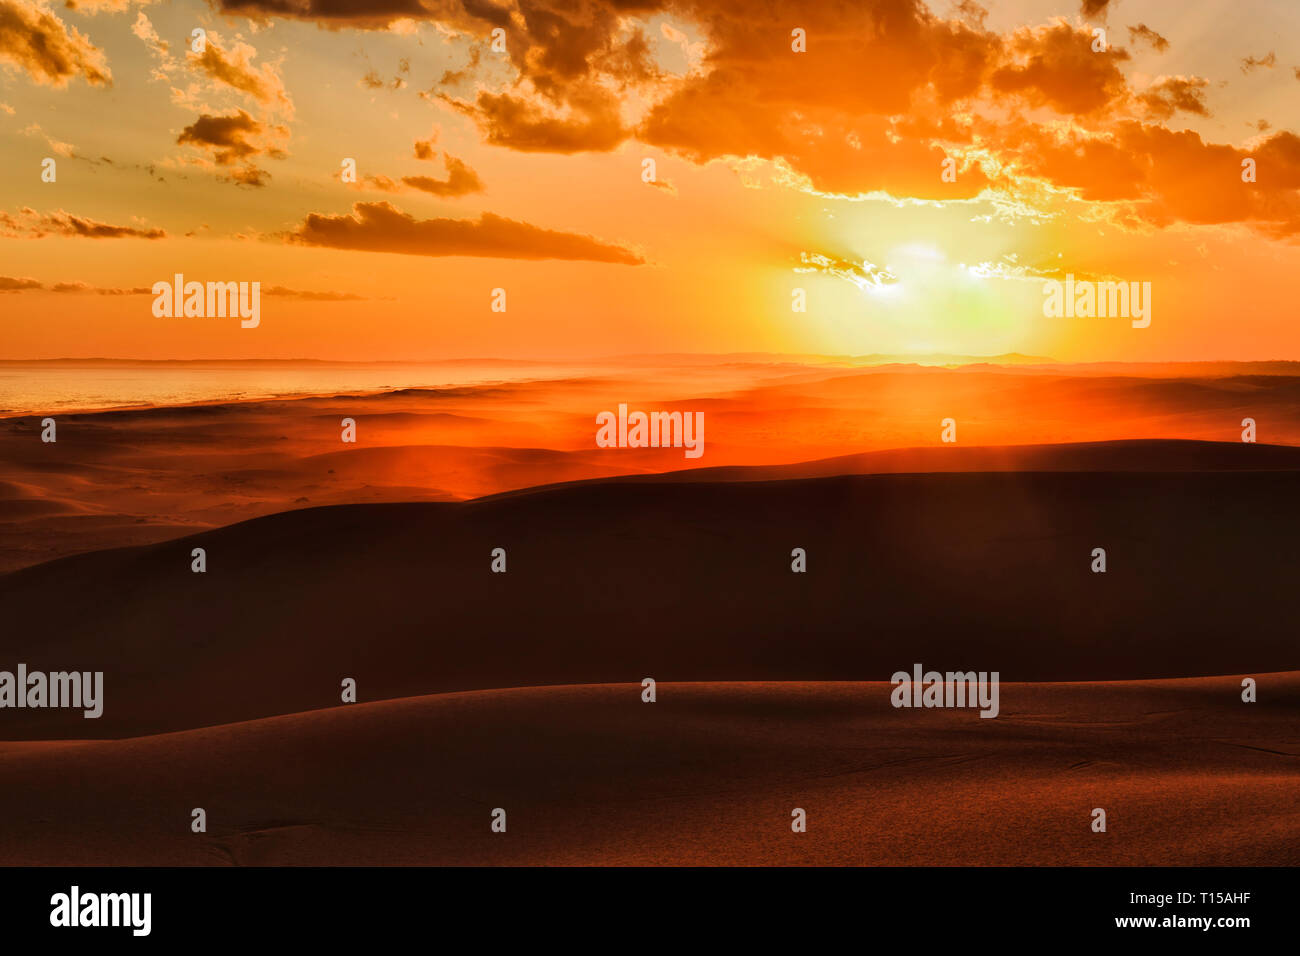 Die Sonne über Horizont hinter den langen, einsamen Dünen von Stockton Strand an der Pazifikküste von Australien - helle orange Sonnenlicht Farben Sand und s Stockfoto